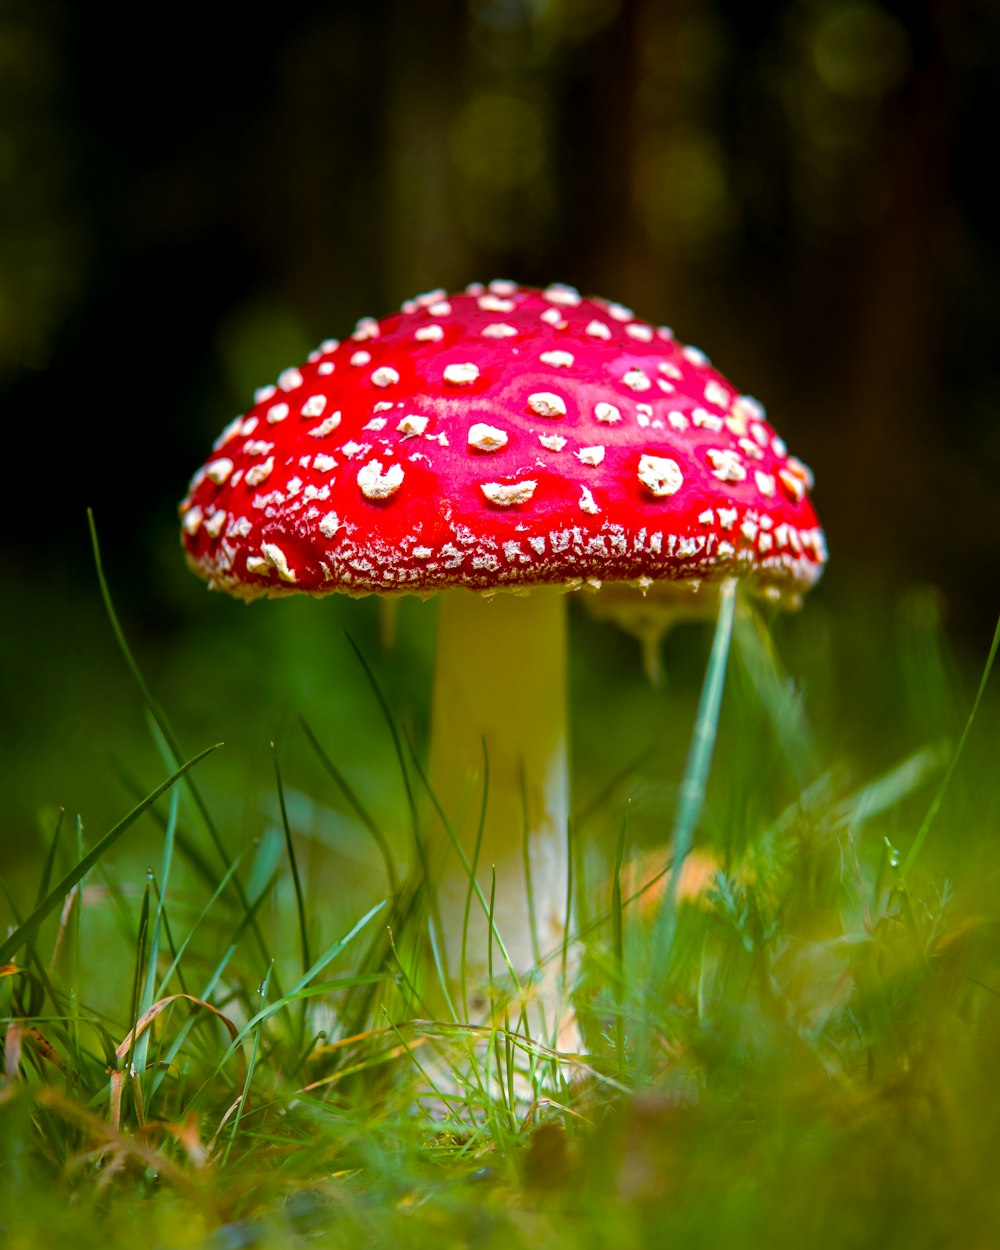 fungo rosso e bianco in erba verde